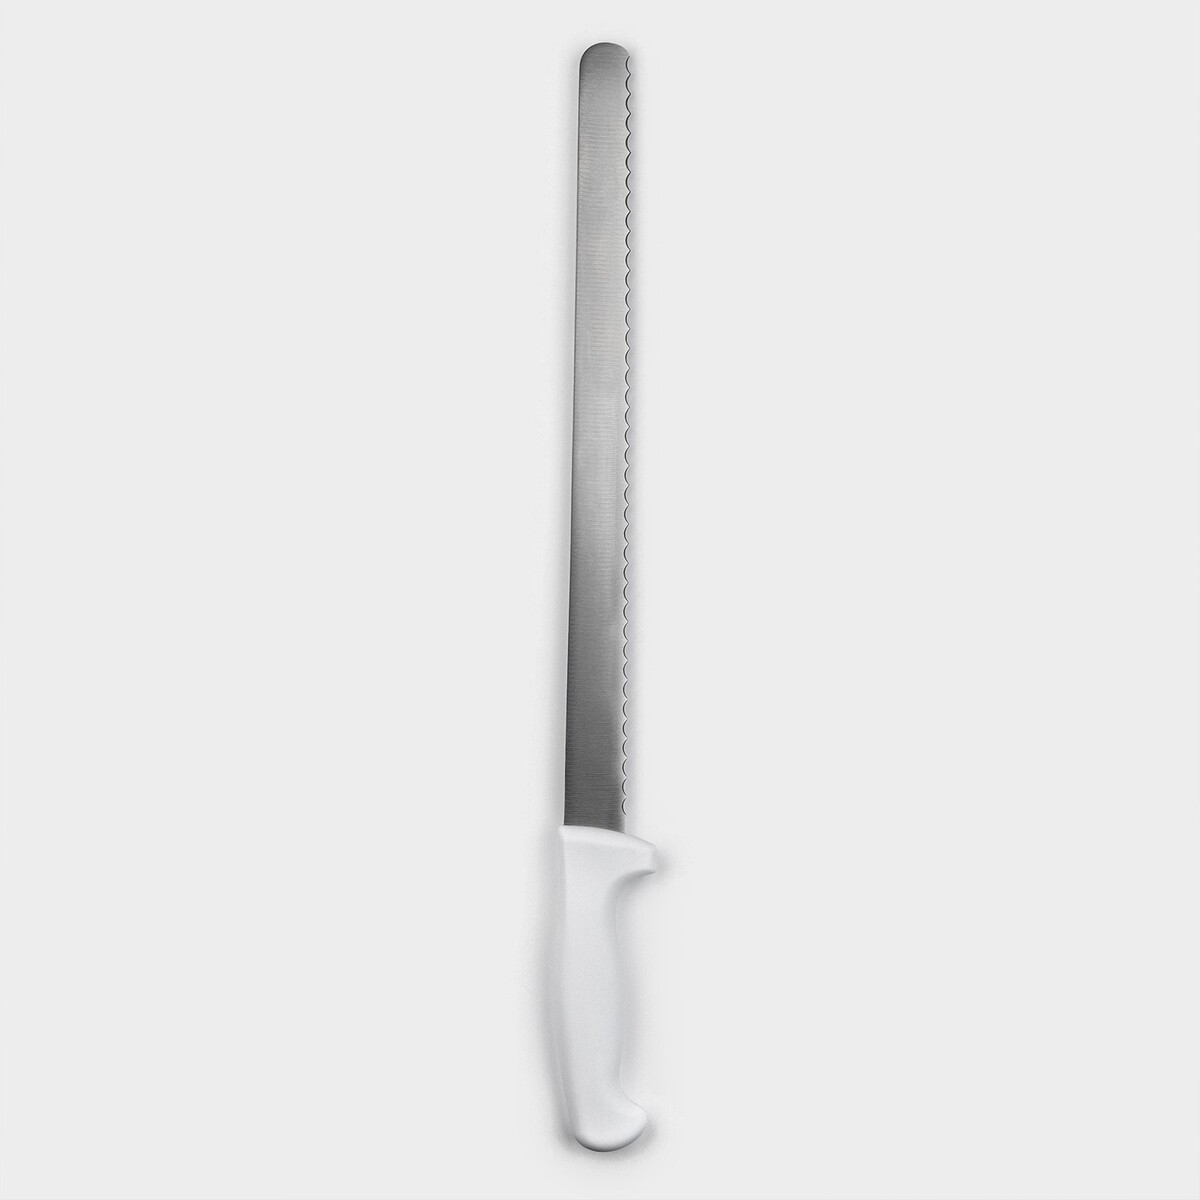 Нож для бисквита, рабочая поверхность 34 см, крупные зубчики нож для бисквита крупные зубцы длина лезвия 25 см деревянная ручка толщина лезвия 1 мм